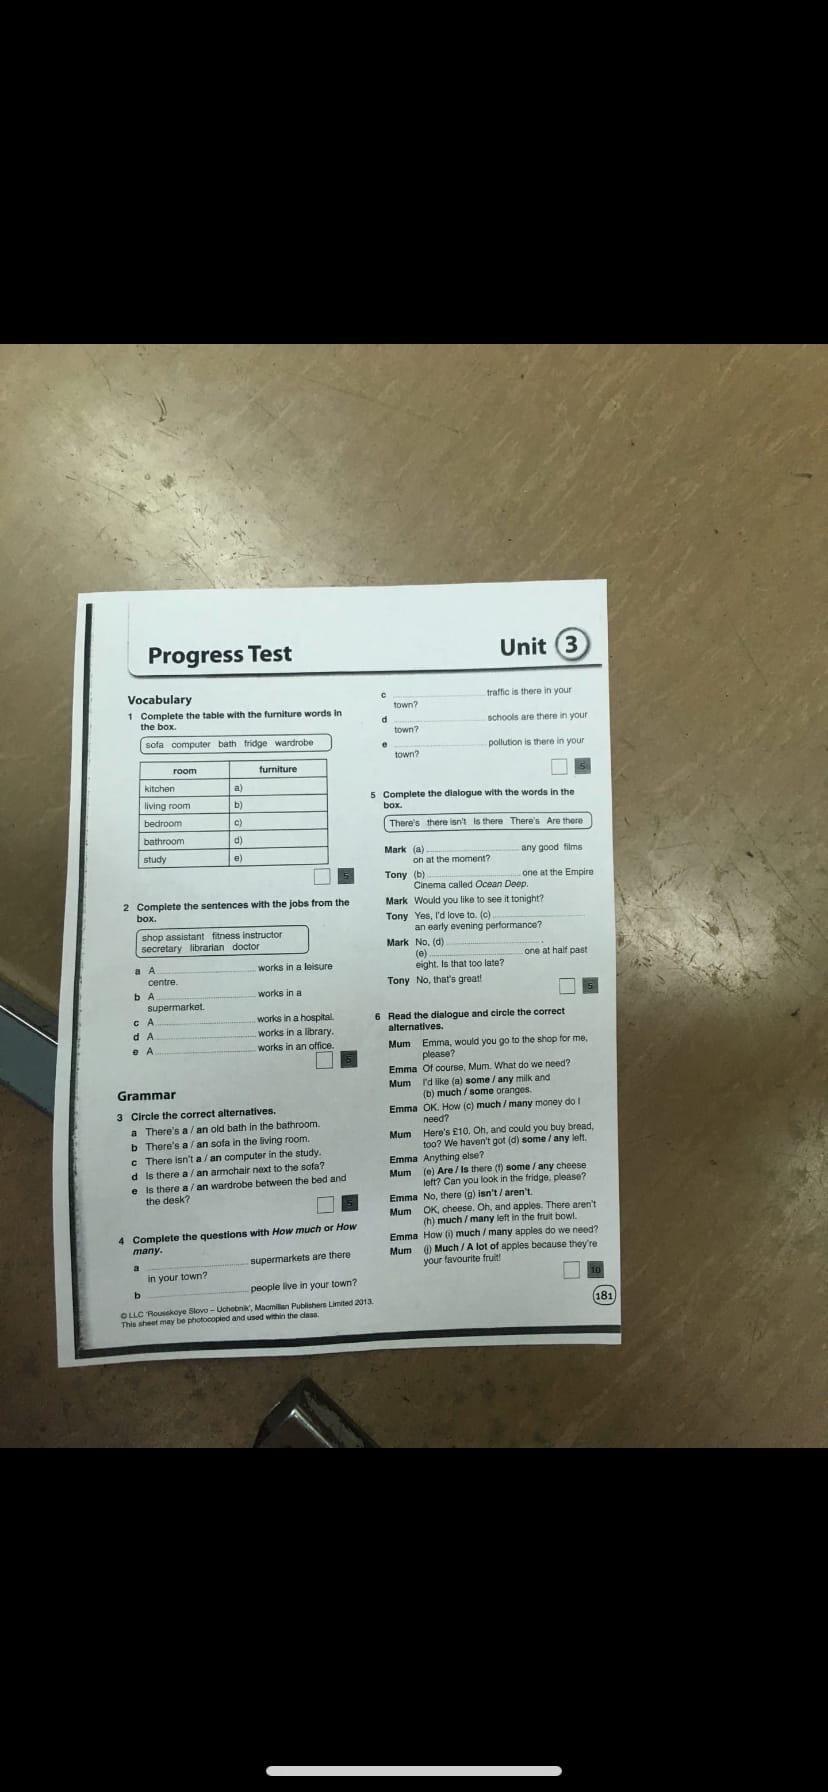 Test unit 6 8 класс ответы. Прогресс тест Юнит 3 7 класс. Прогресс тест Юнит 7. Прогресс тест 3 Unit. Прогресс тест Юнит 3 8 класс.